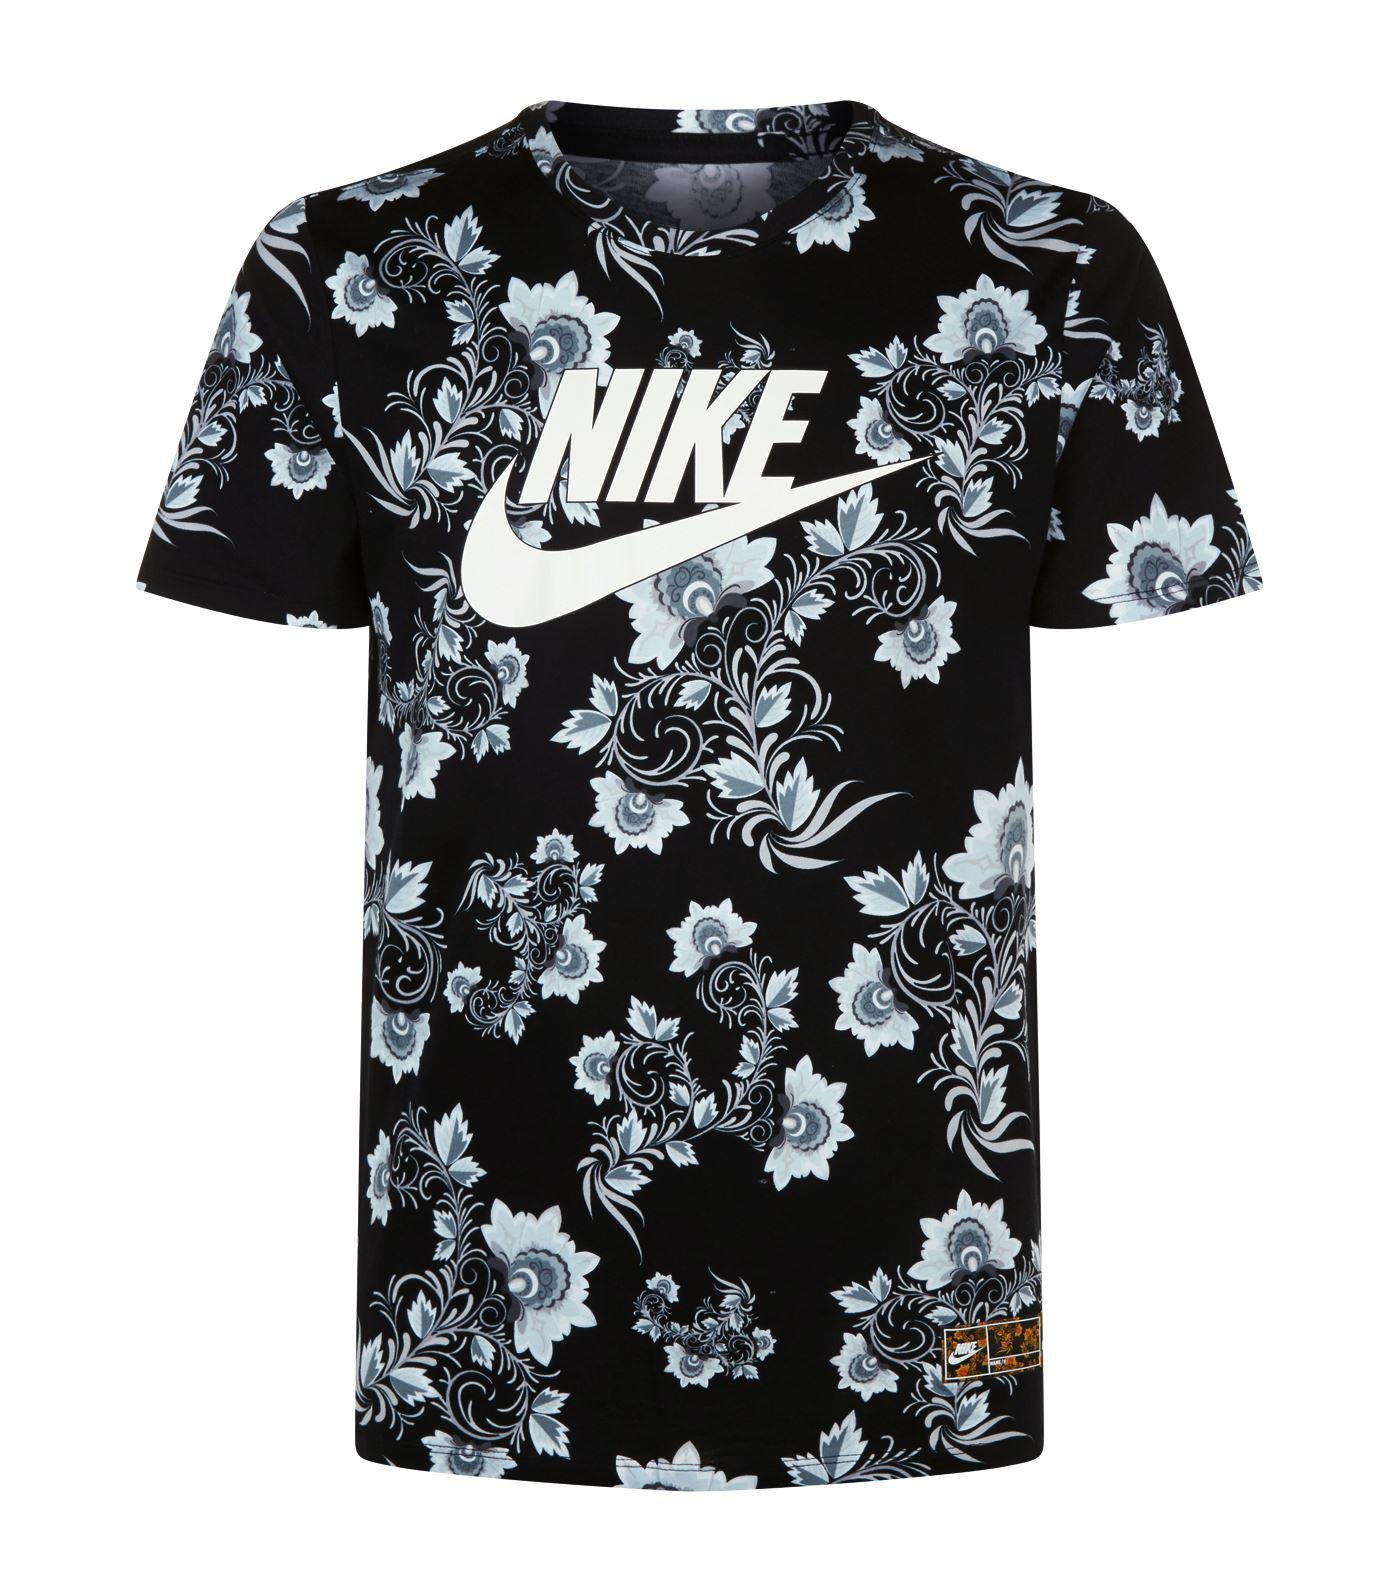 bekræfte Følsom tykkelse Nike Floral Print T-shirt, Black, M for Men | Lyst